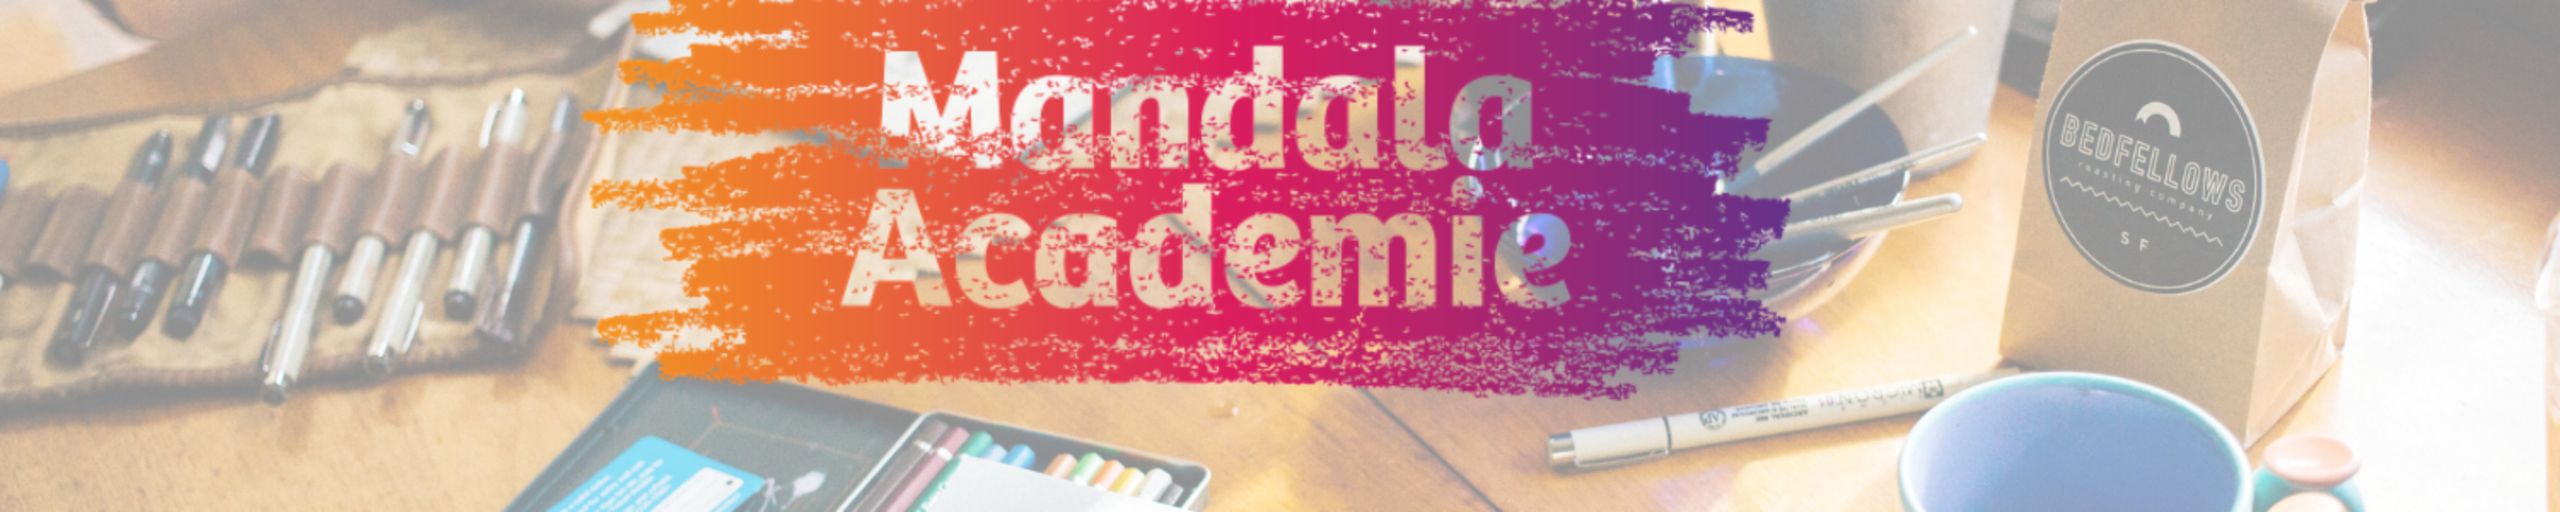 Mandala Academie